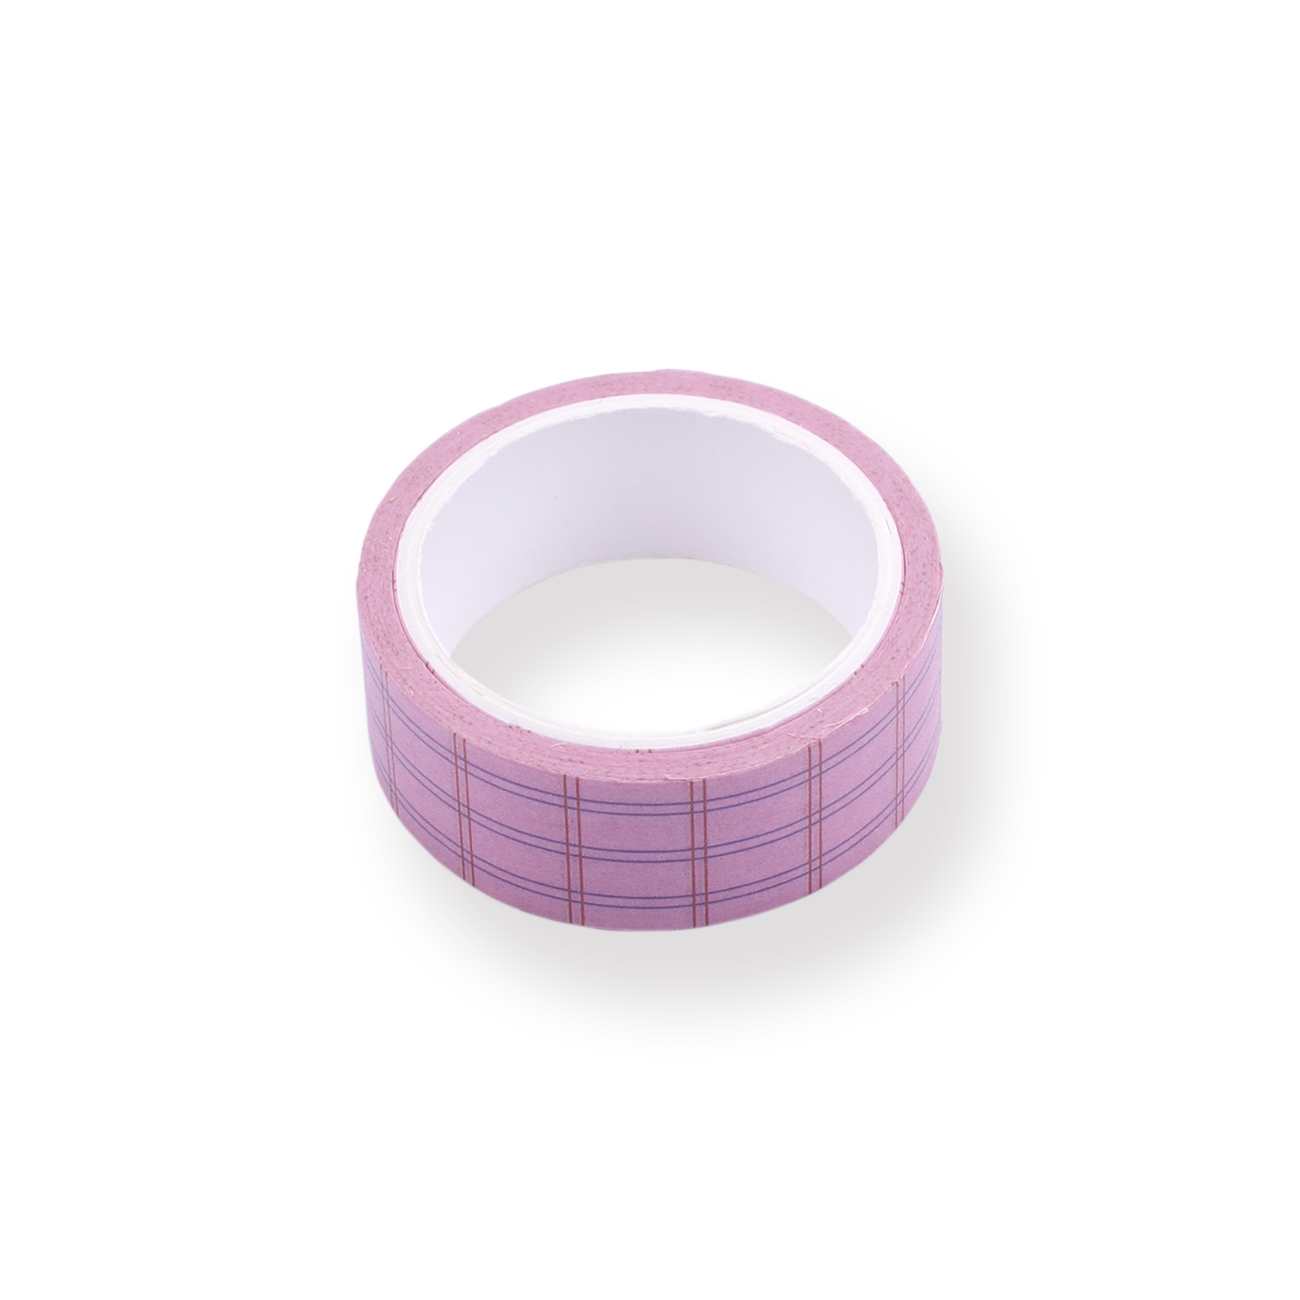 Pastel Pink Washi Tape - Subtle Parchment Paper Pattern - 15mm x 10m - –  MindTheWrap